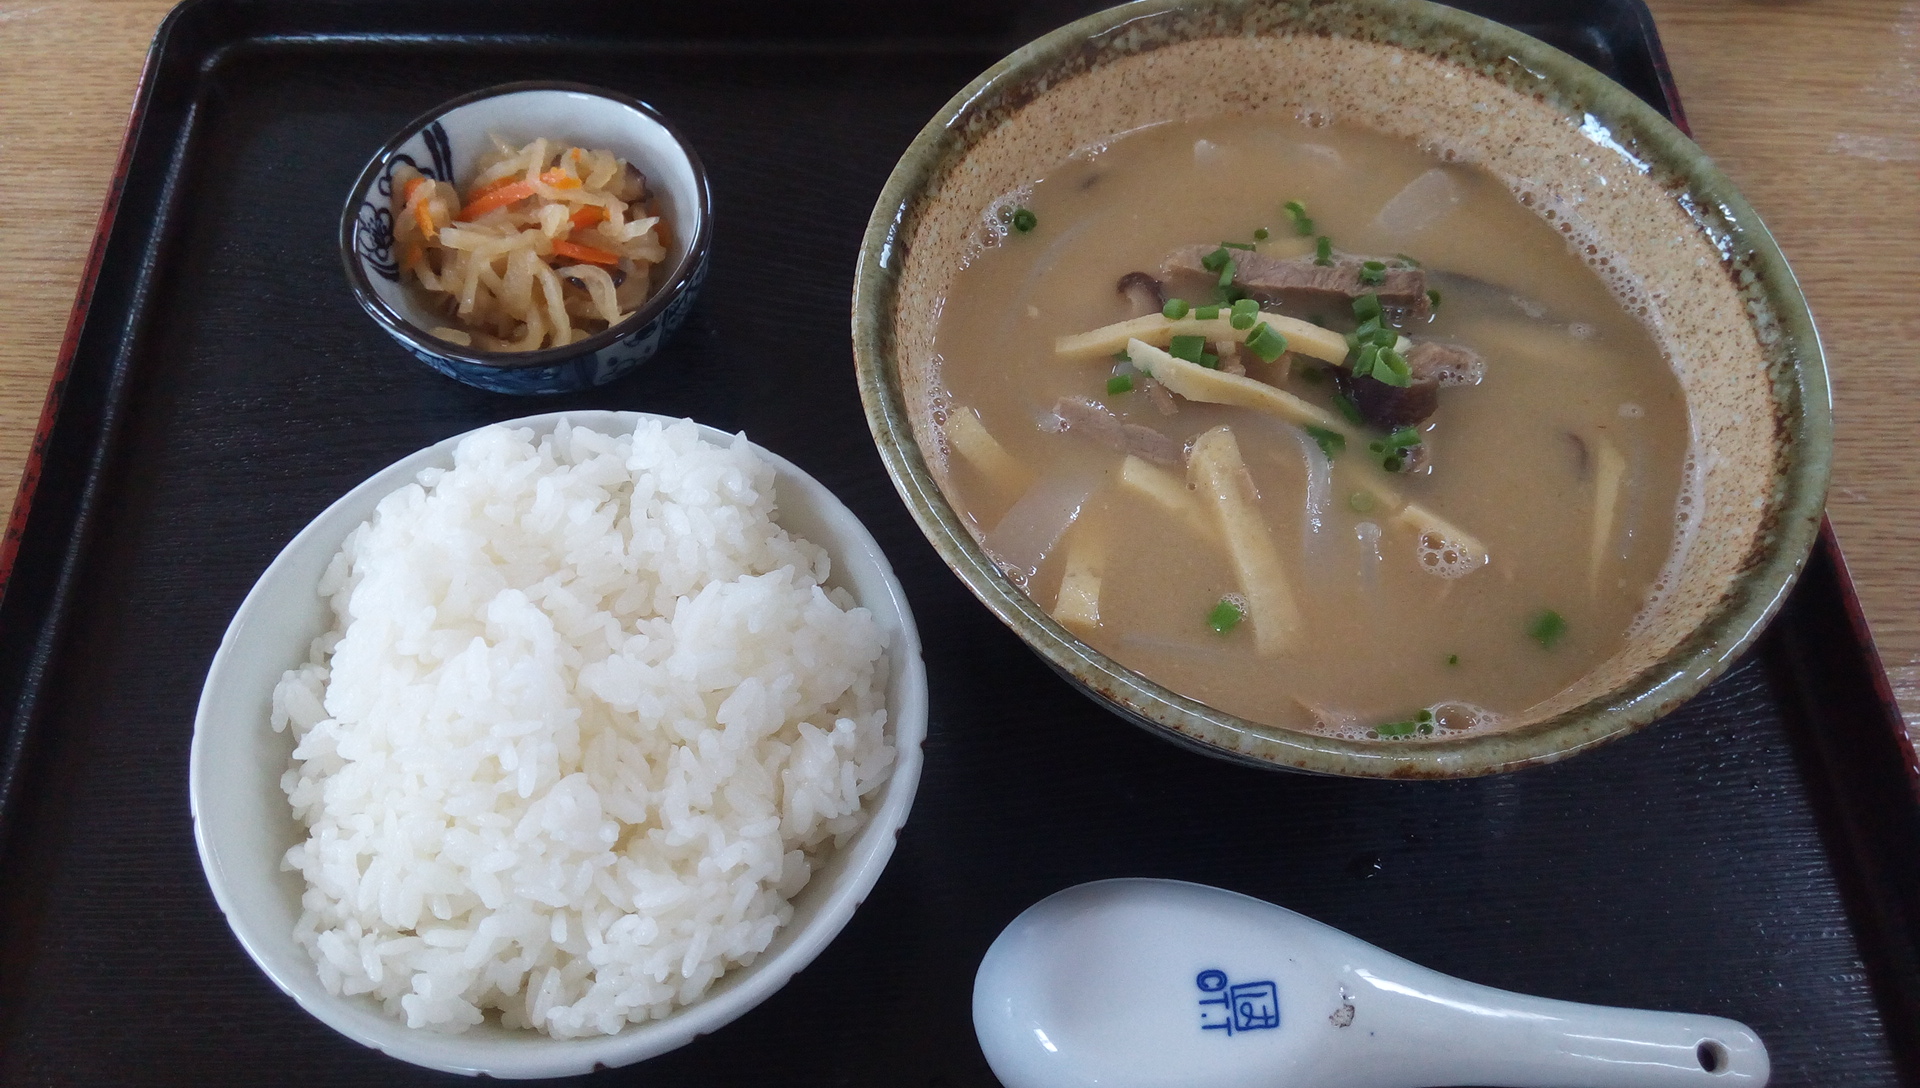 Inamuduchi soup